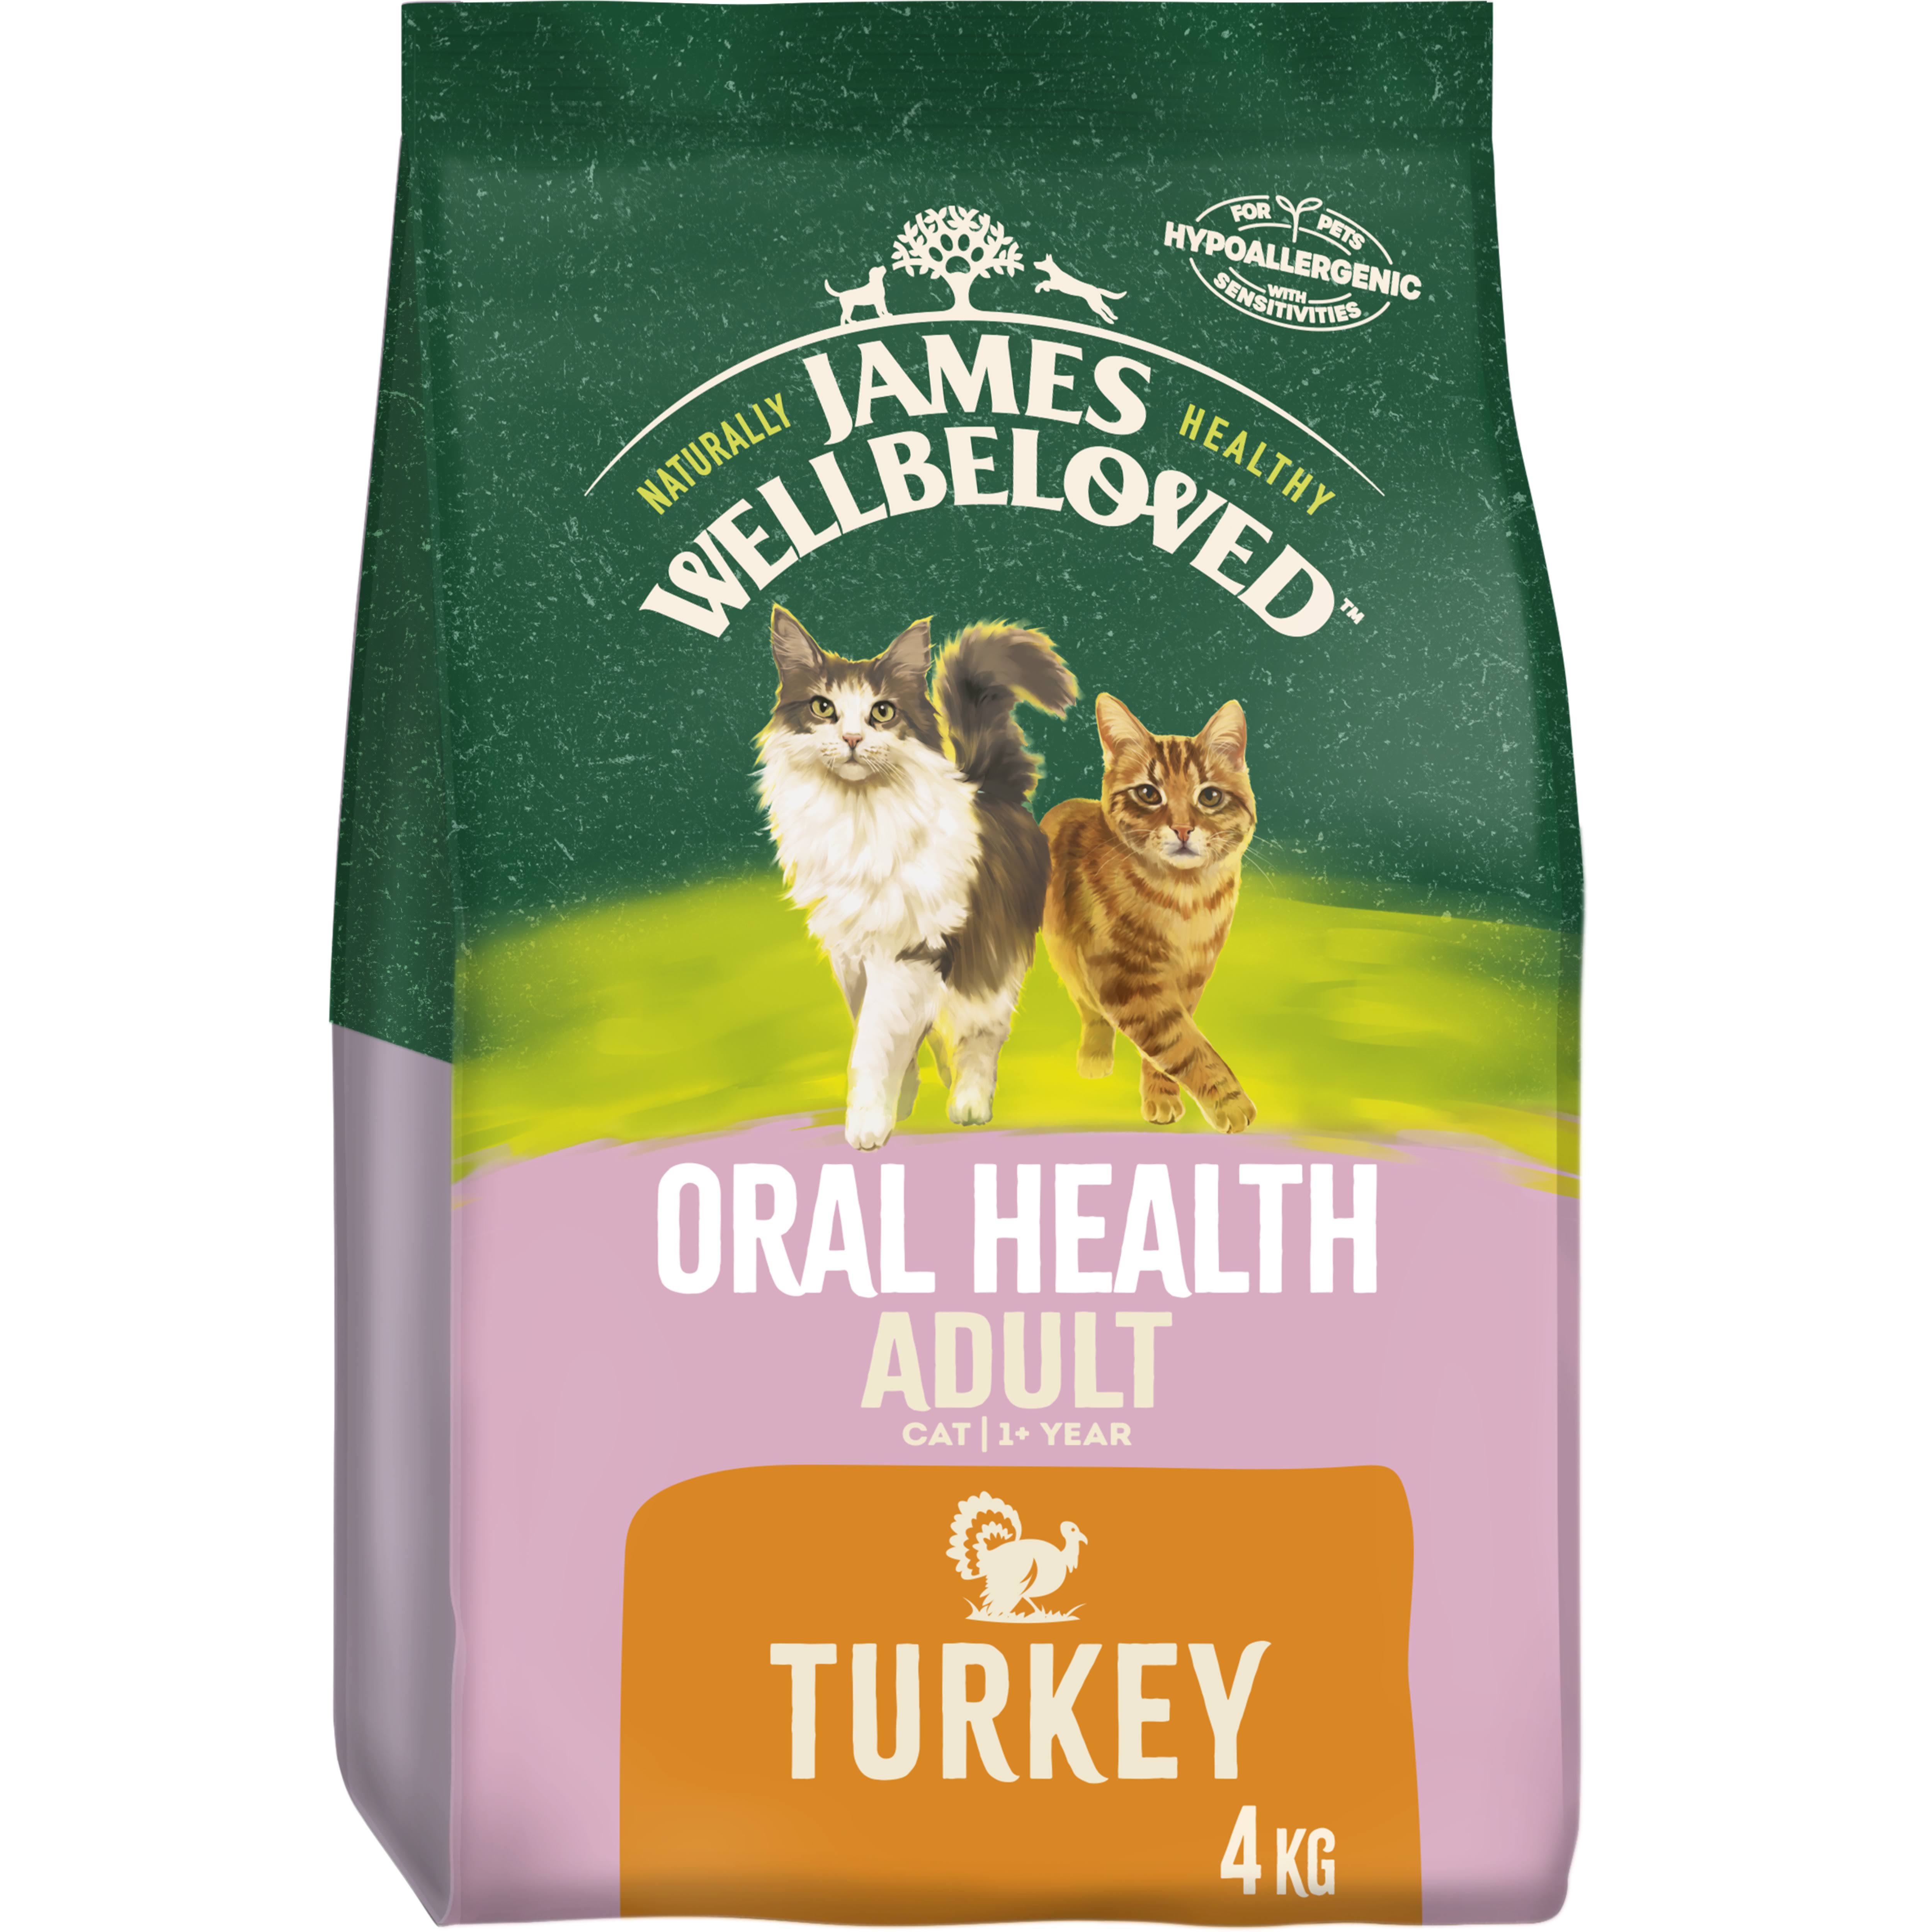 James Wellbeloved Adult Cat Food Turkey Oral Health, 4kg